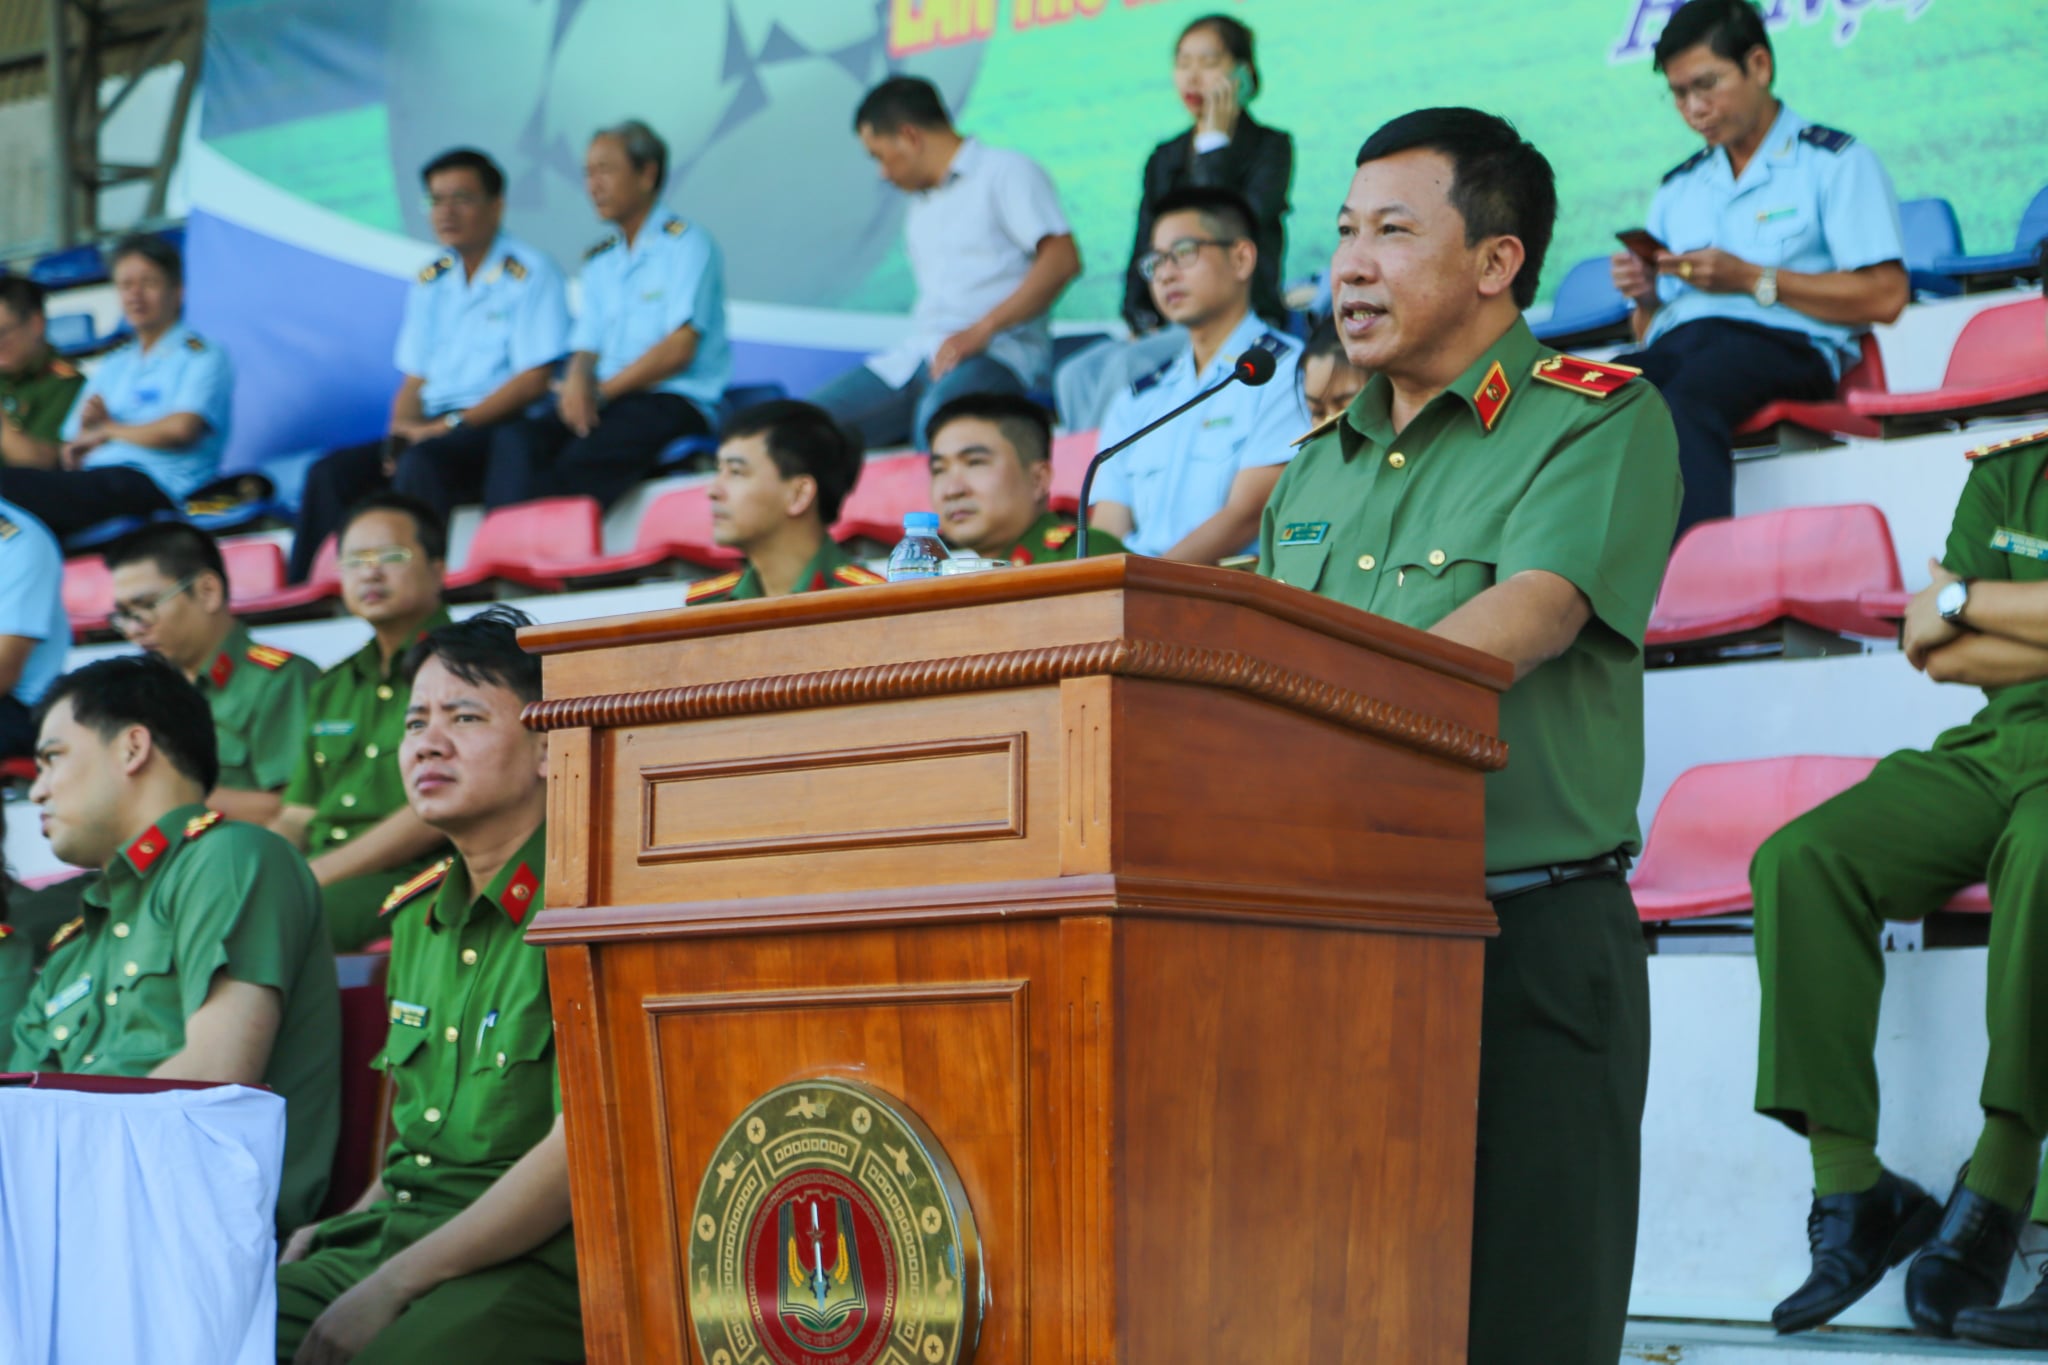 Thiếu tướng Nguyễn Công Bảy - Phó Cục trưởng Cục Công tác đảng và công tác chính trị phát biểu tại chương trình